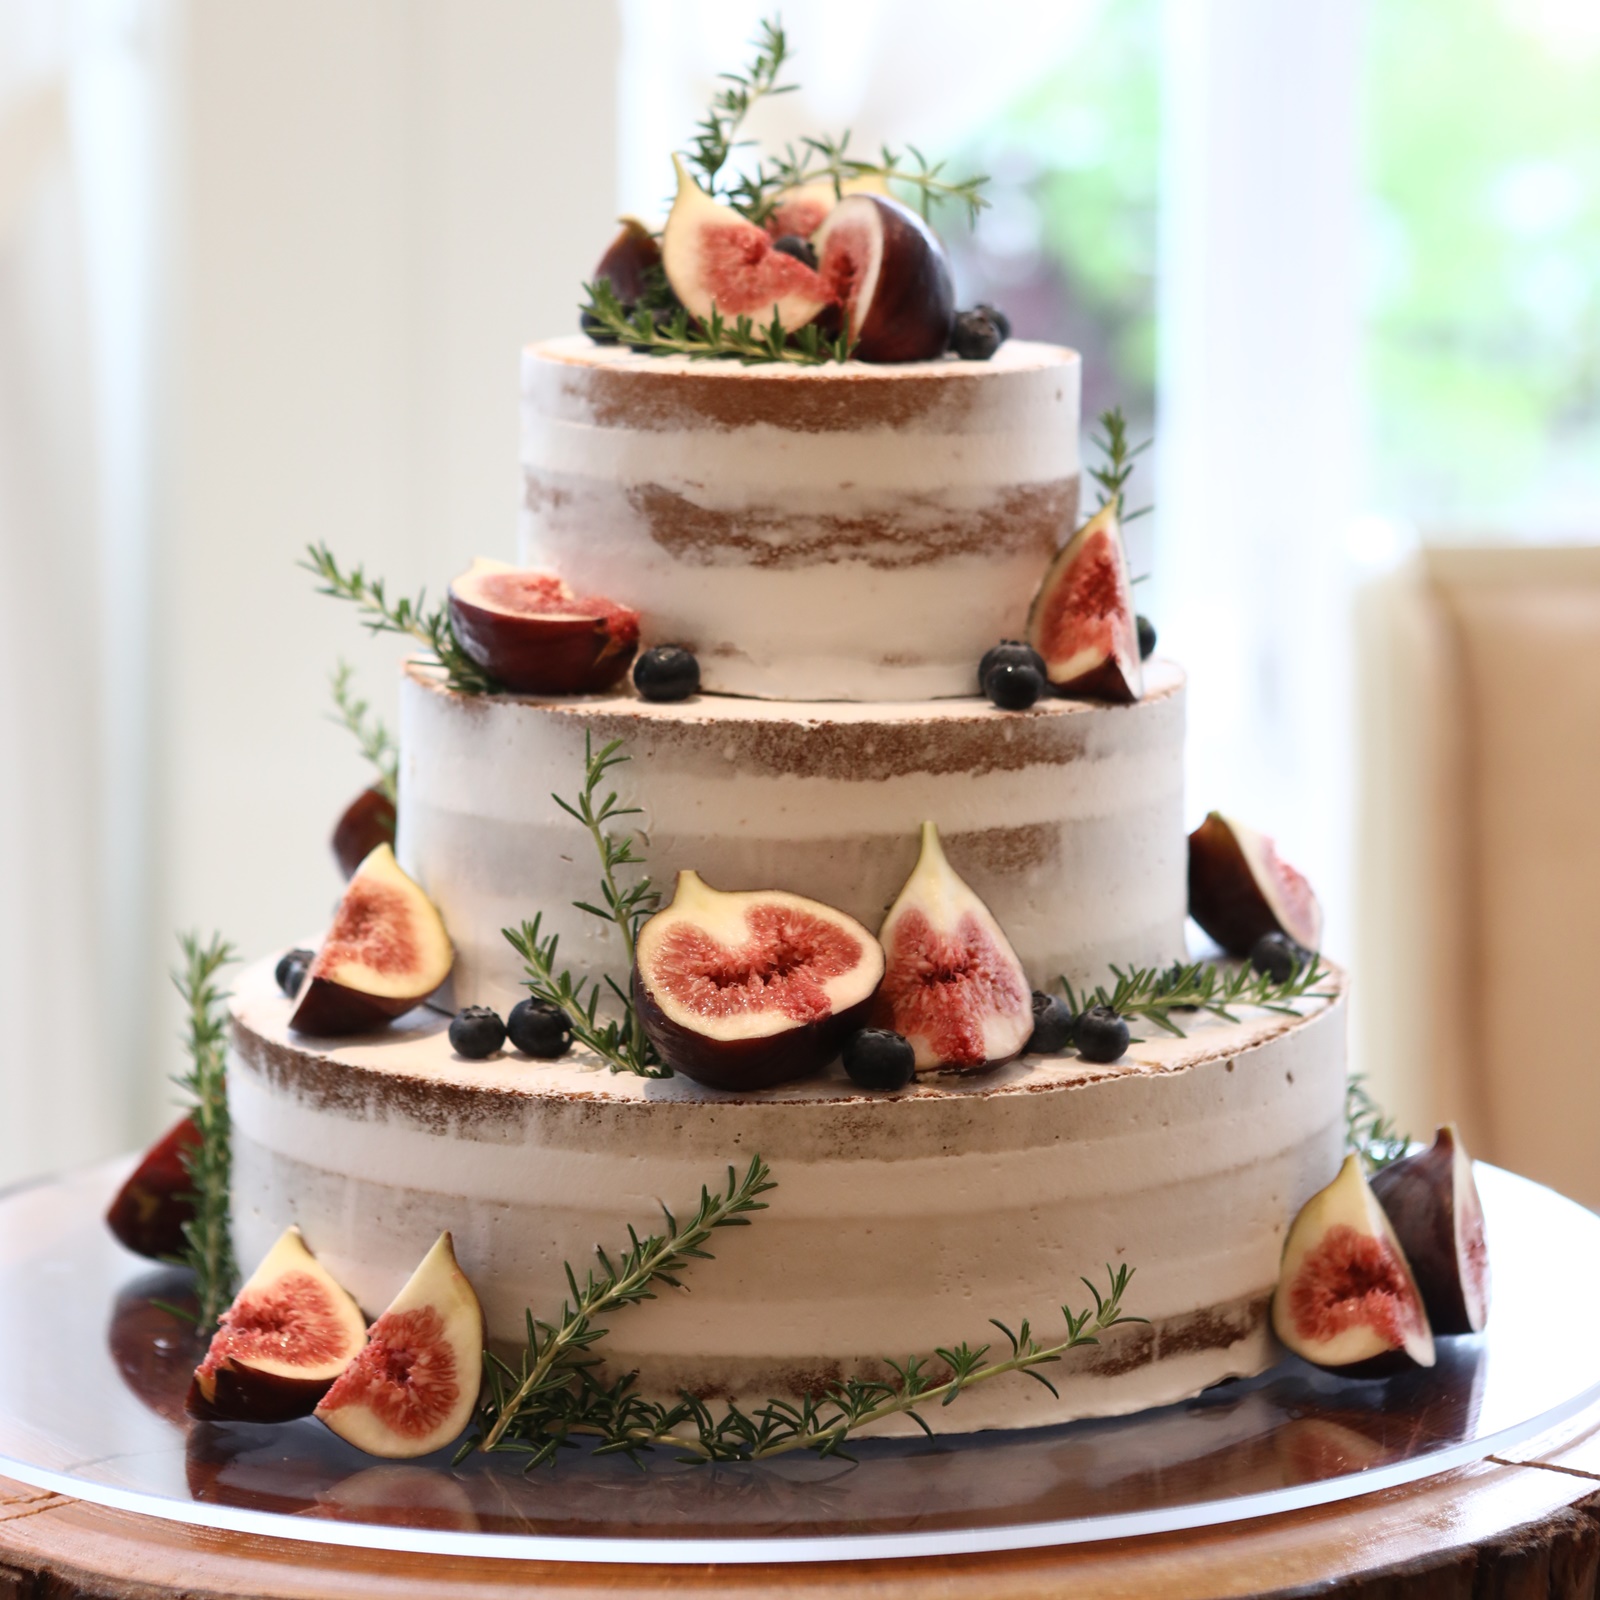 イチジクのセミネイキッドケーキ ニュース ブログ 滋賀 近江八幡の結婚式場 公式 ヴィラ アンジェリカ